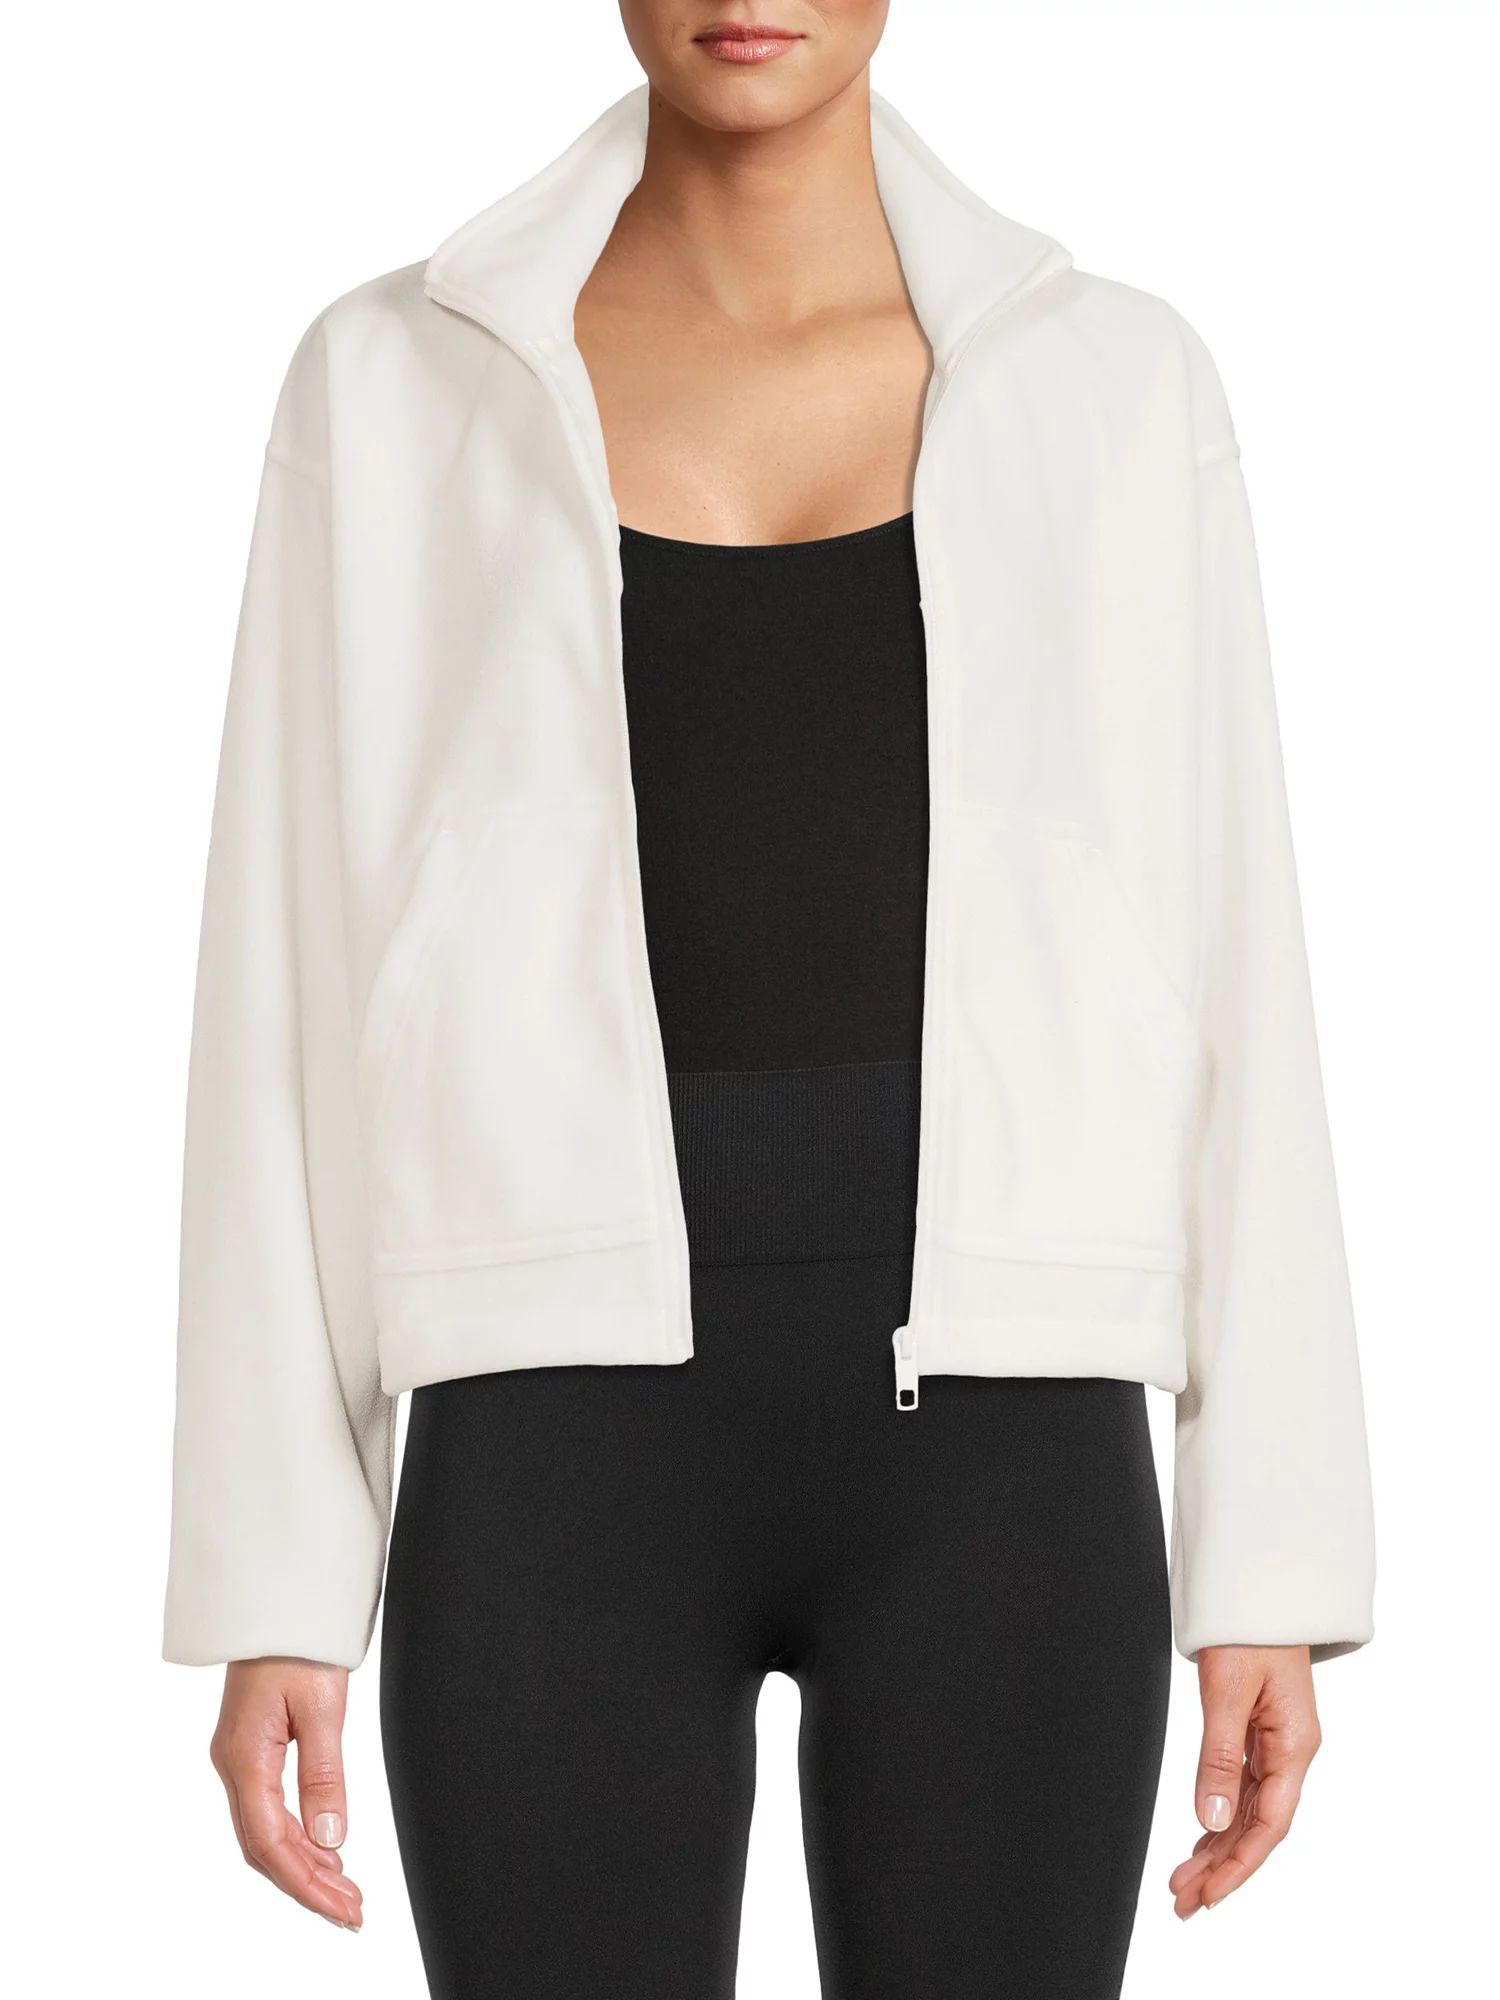 Avia Women's Full Zip Micro Fleece Jacket - Walmart.com | Walmart (US)